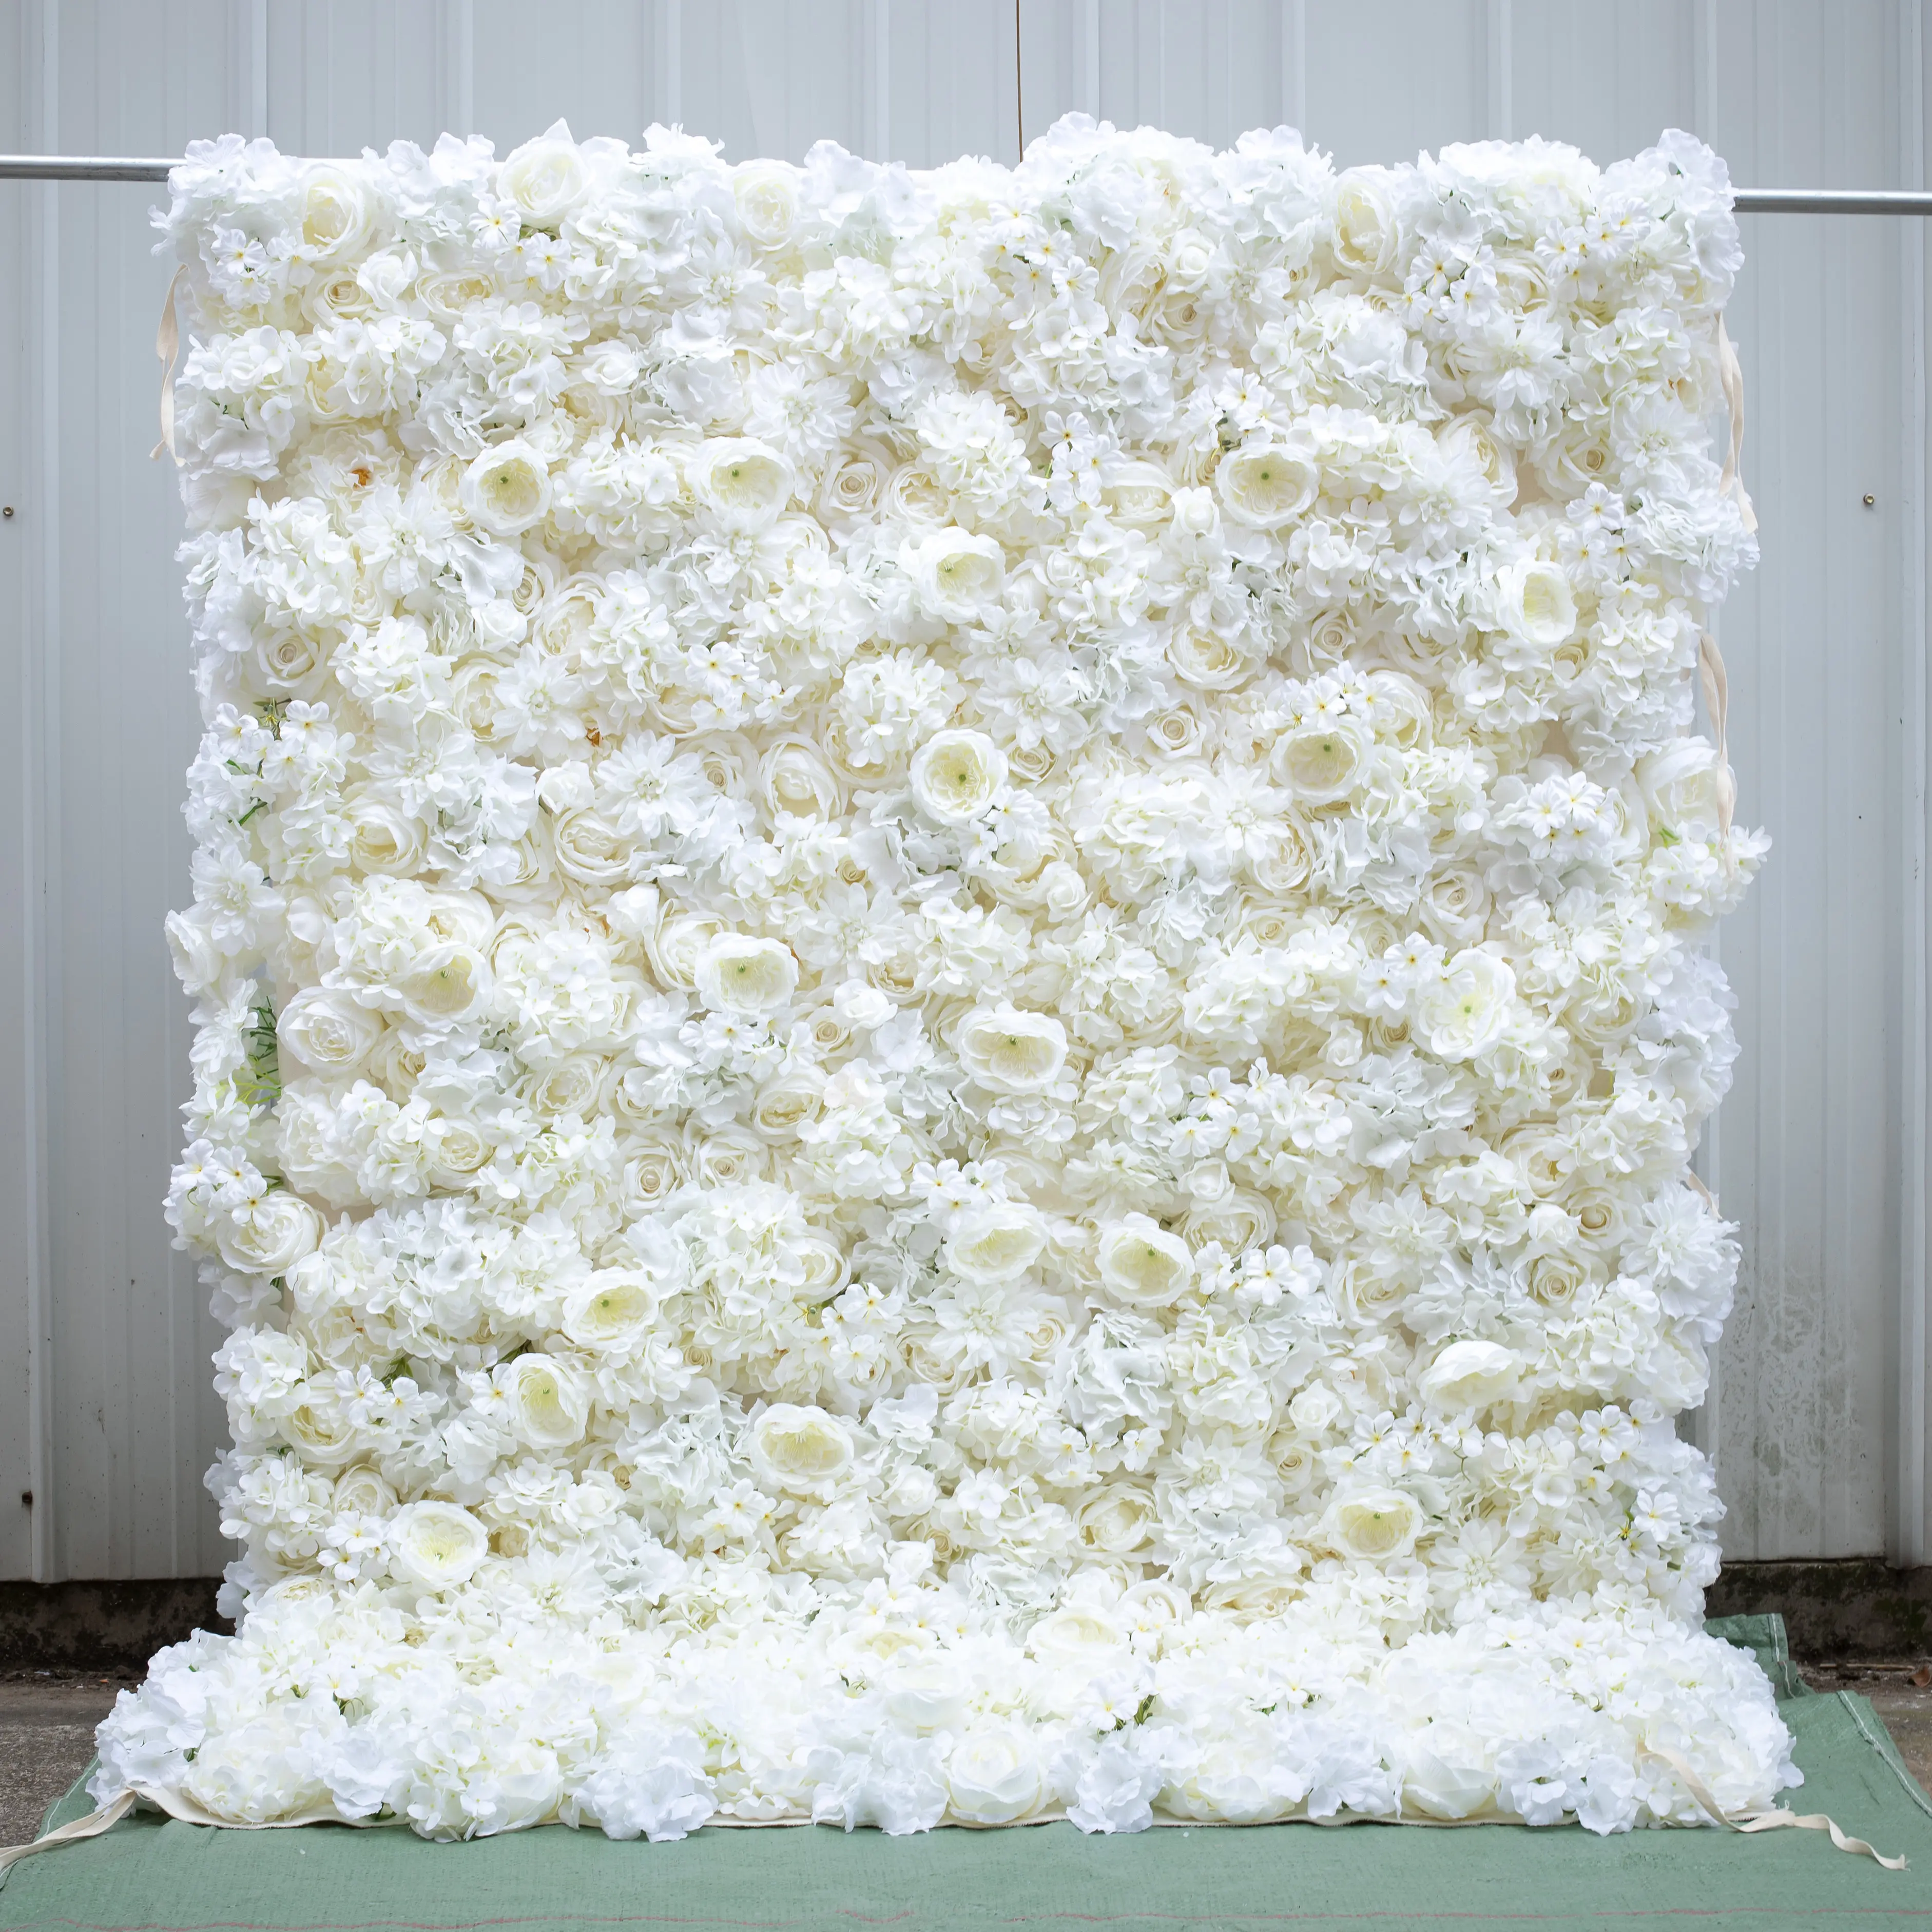 8 * 8ft Chất lượng cao 3D trắng hoa nhân tạo trang trí tường cuộn lên Rèm Backdrop cho sự kiện đám cưới decorationng